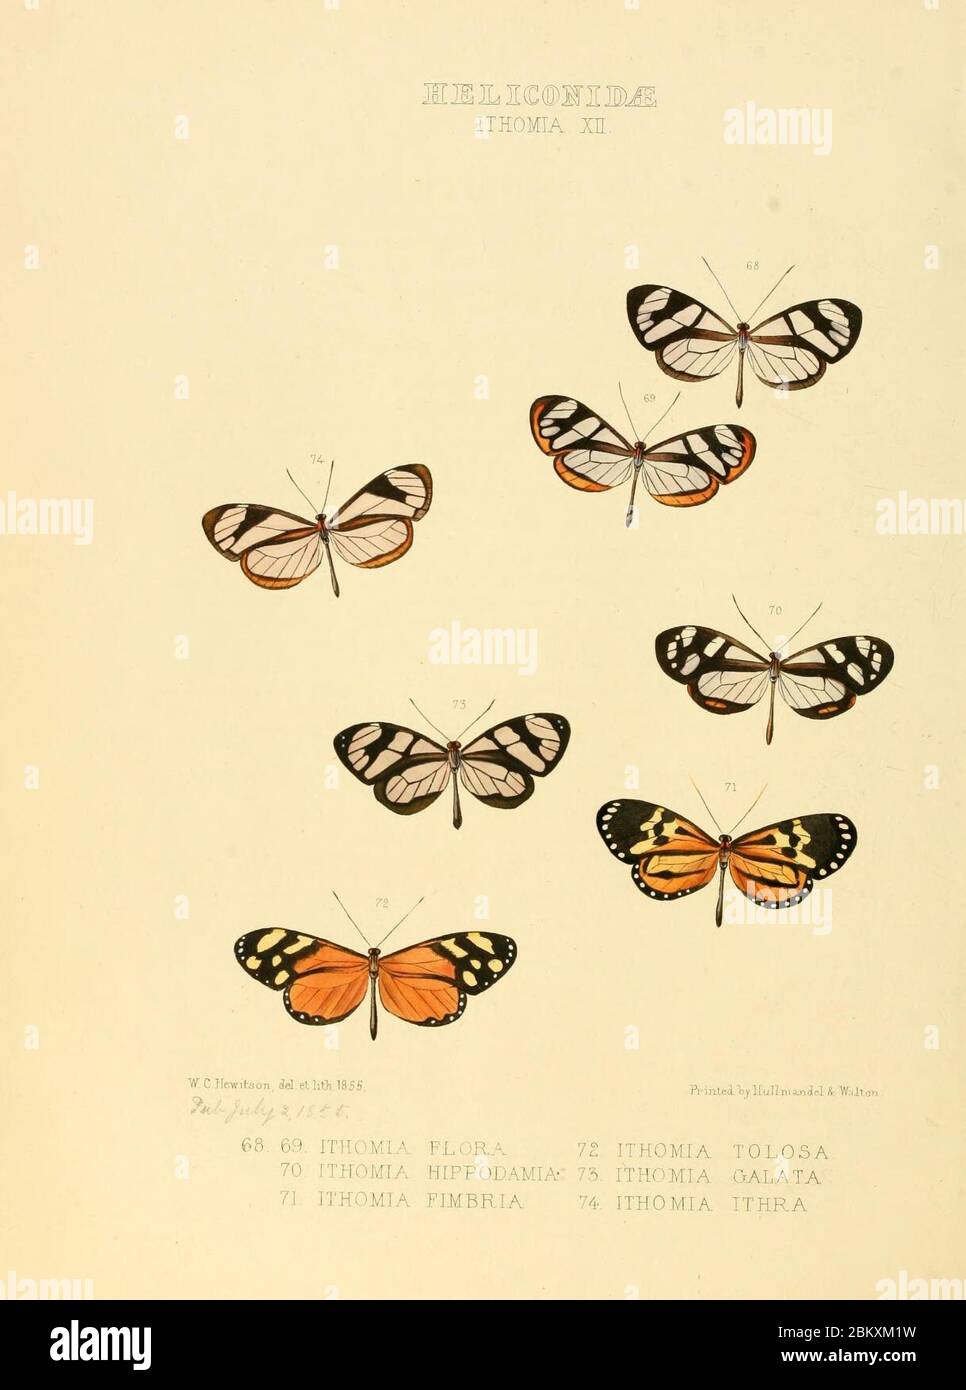 Illustrazioni di nuove specie di farfalle esotiche (Heliconidae- Ithomia XII) Foto Stock